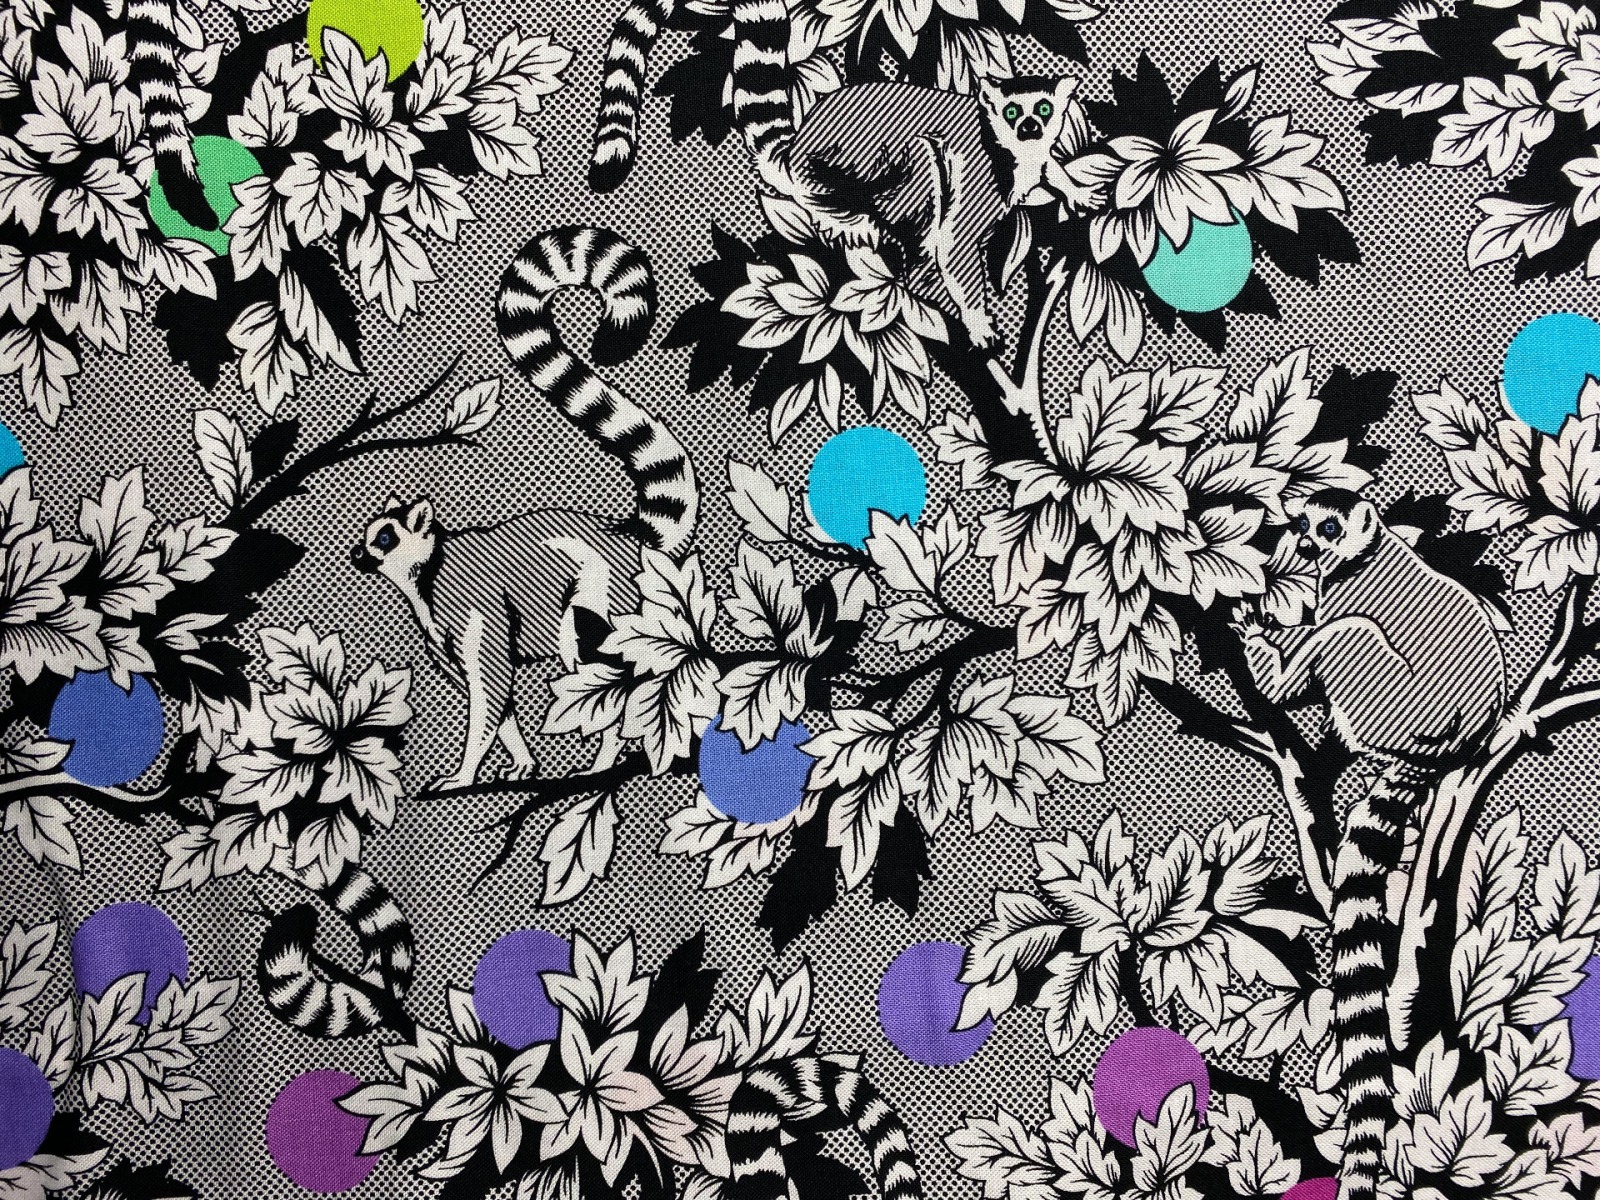 Stoff Lemur Me Alone - 100 Baumwolle - schwarz/weiß - Patchwork - Free Spirit Fabrics - Tula Pink - Kattas -Lemuren 5